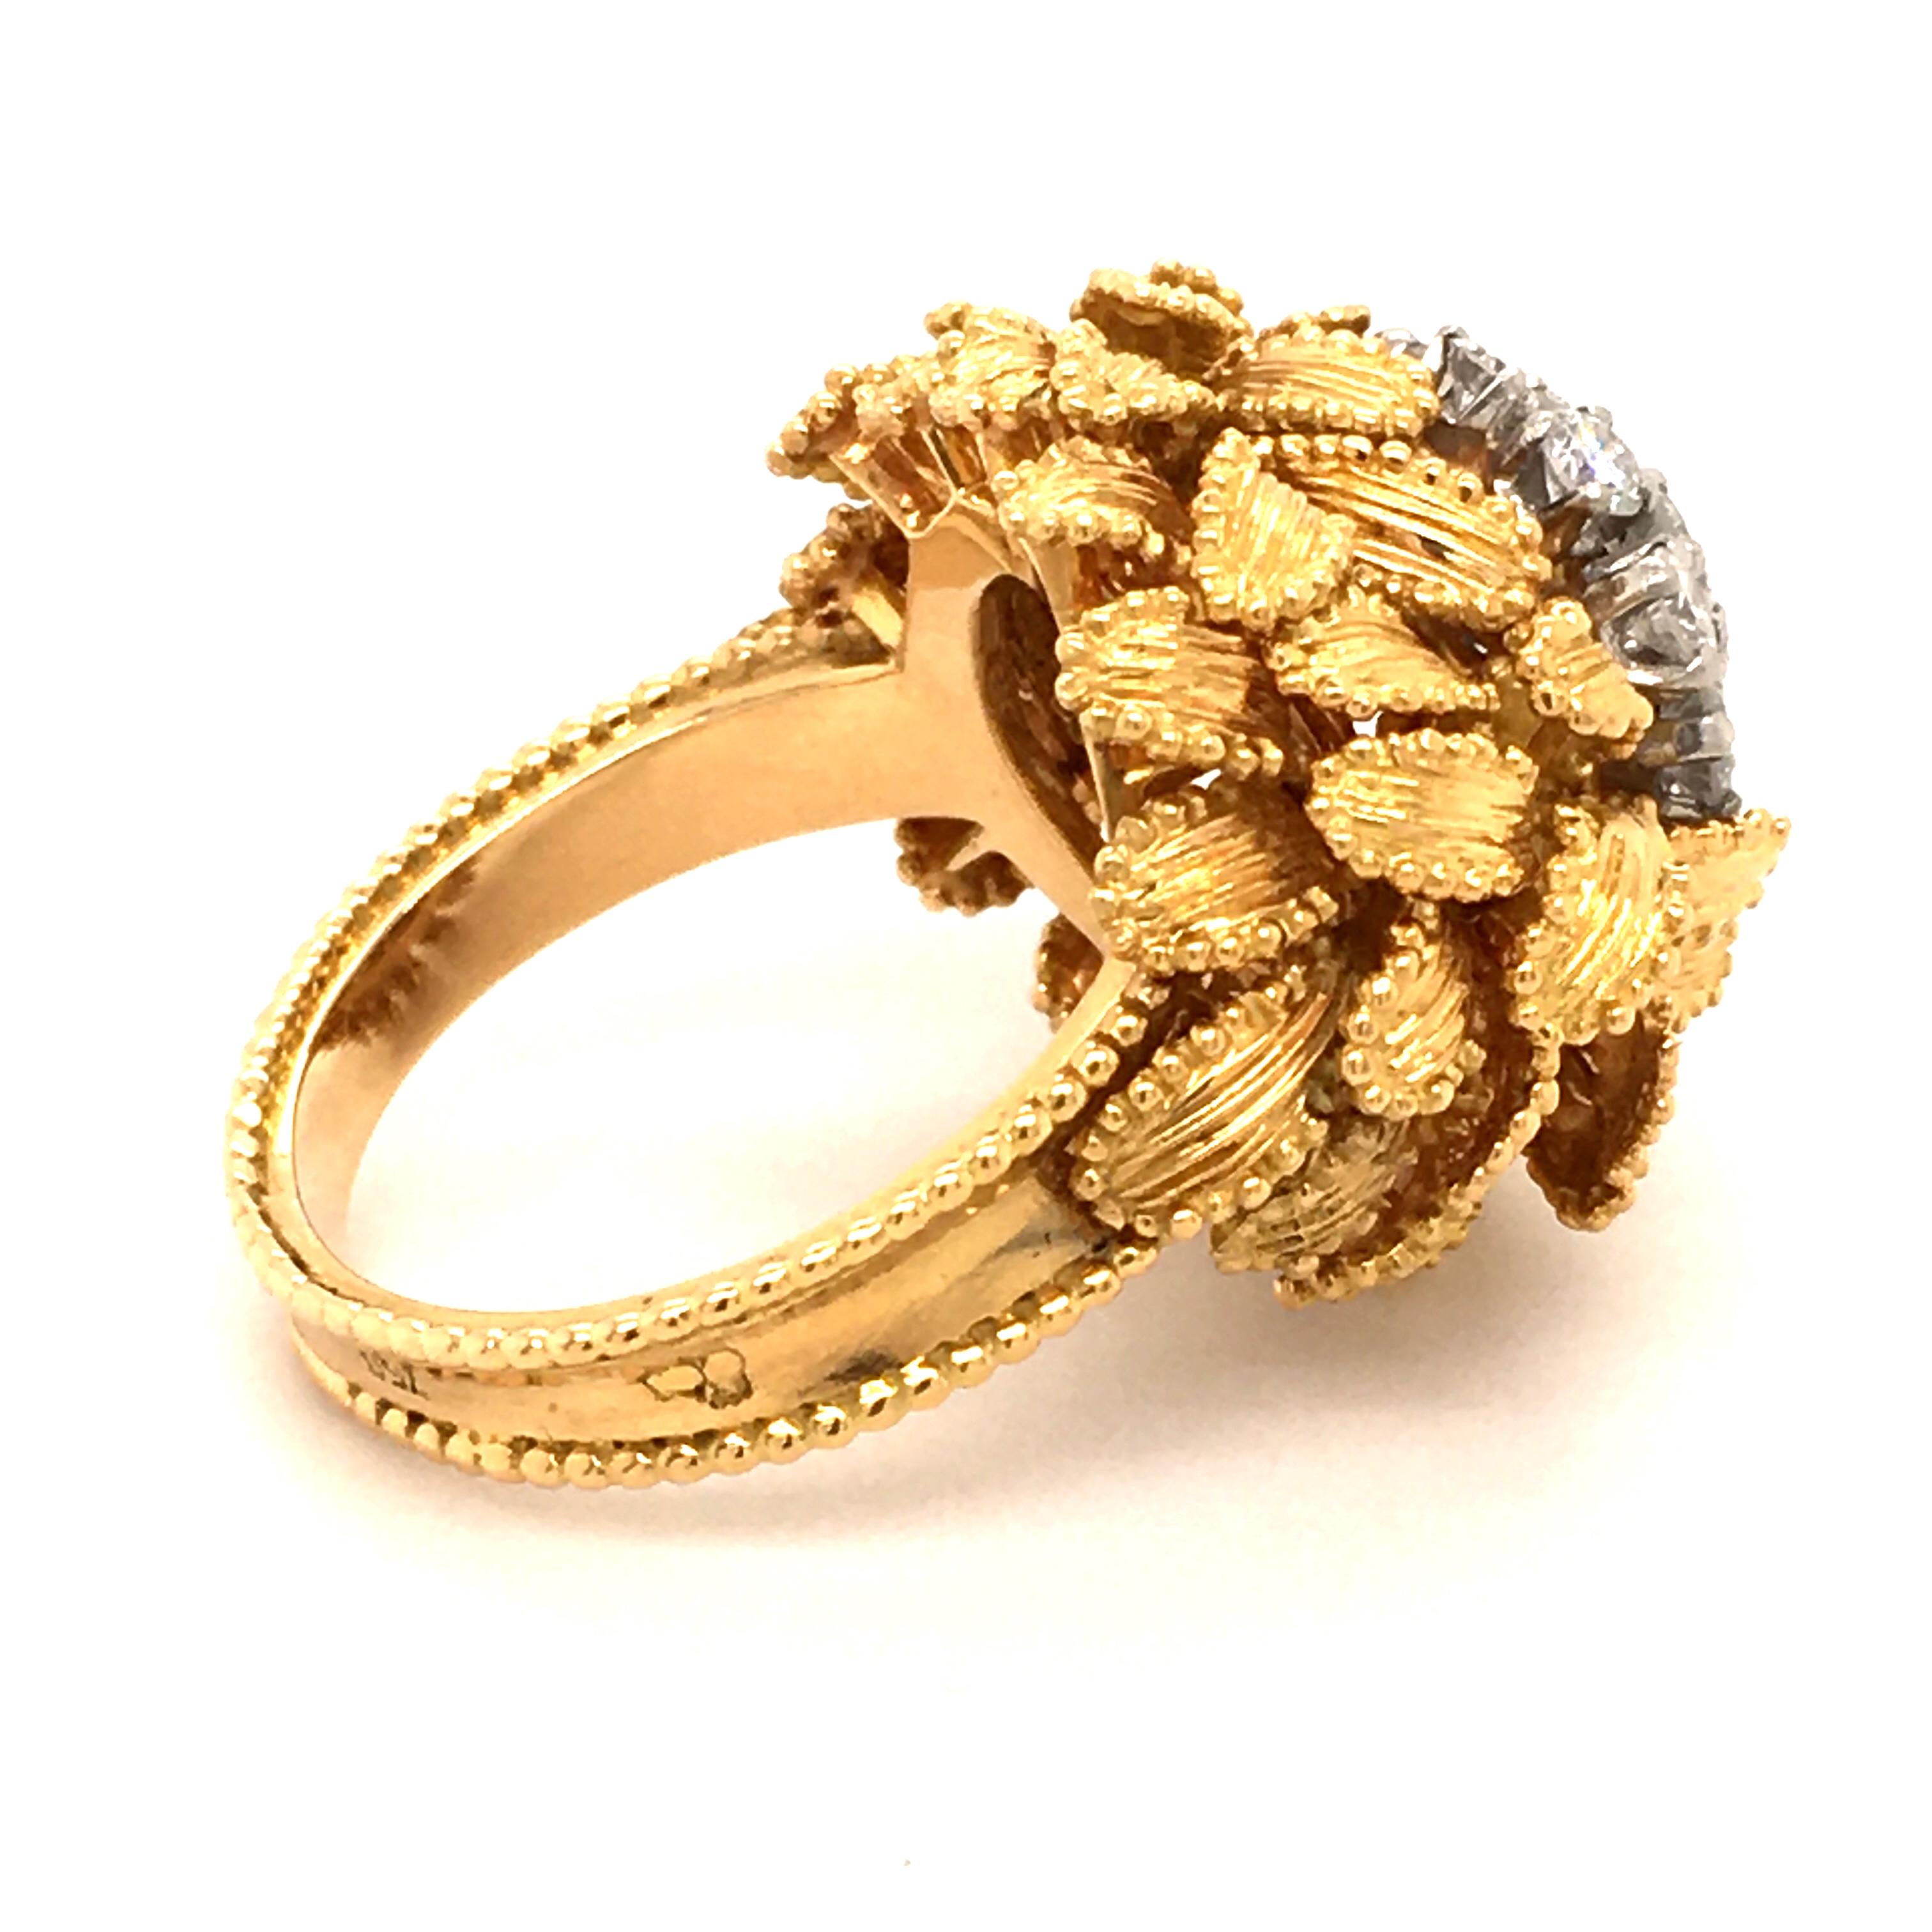 Gubelin Diamond Ring in 18 Karat Yellow and White Gold 3